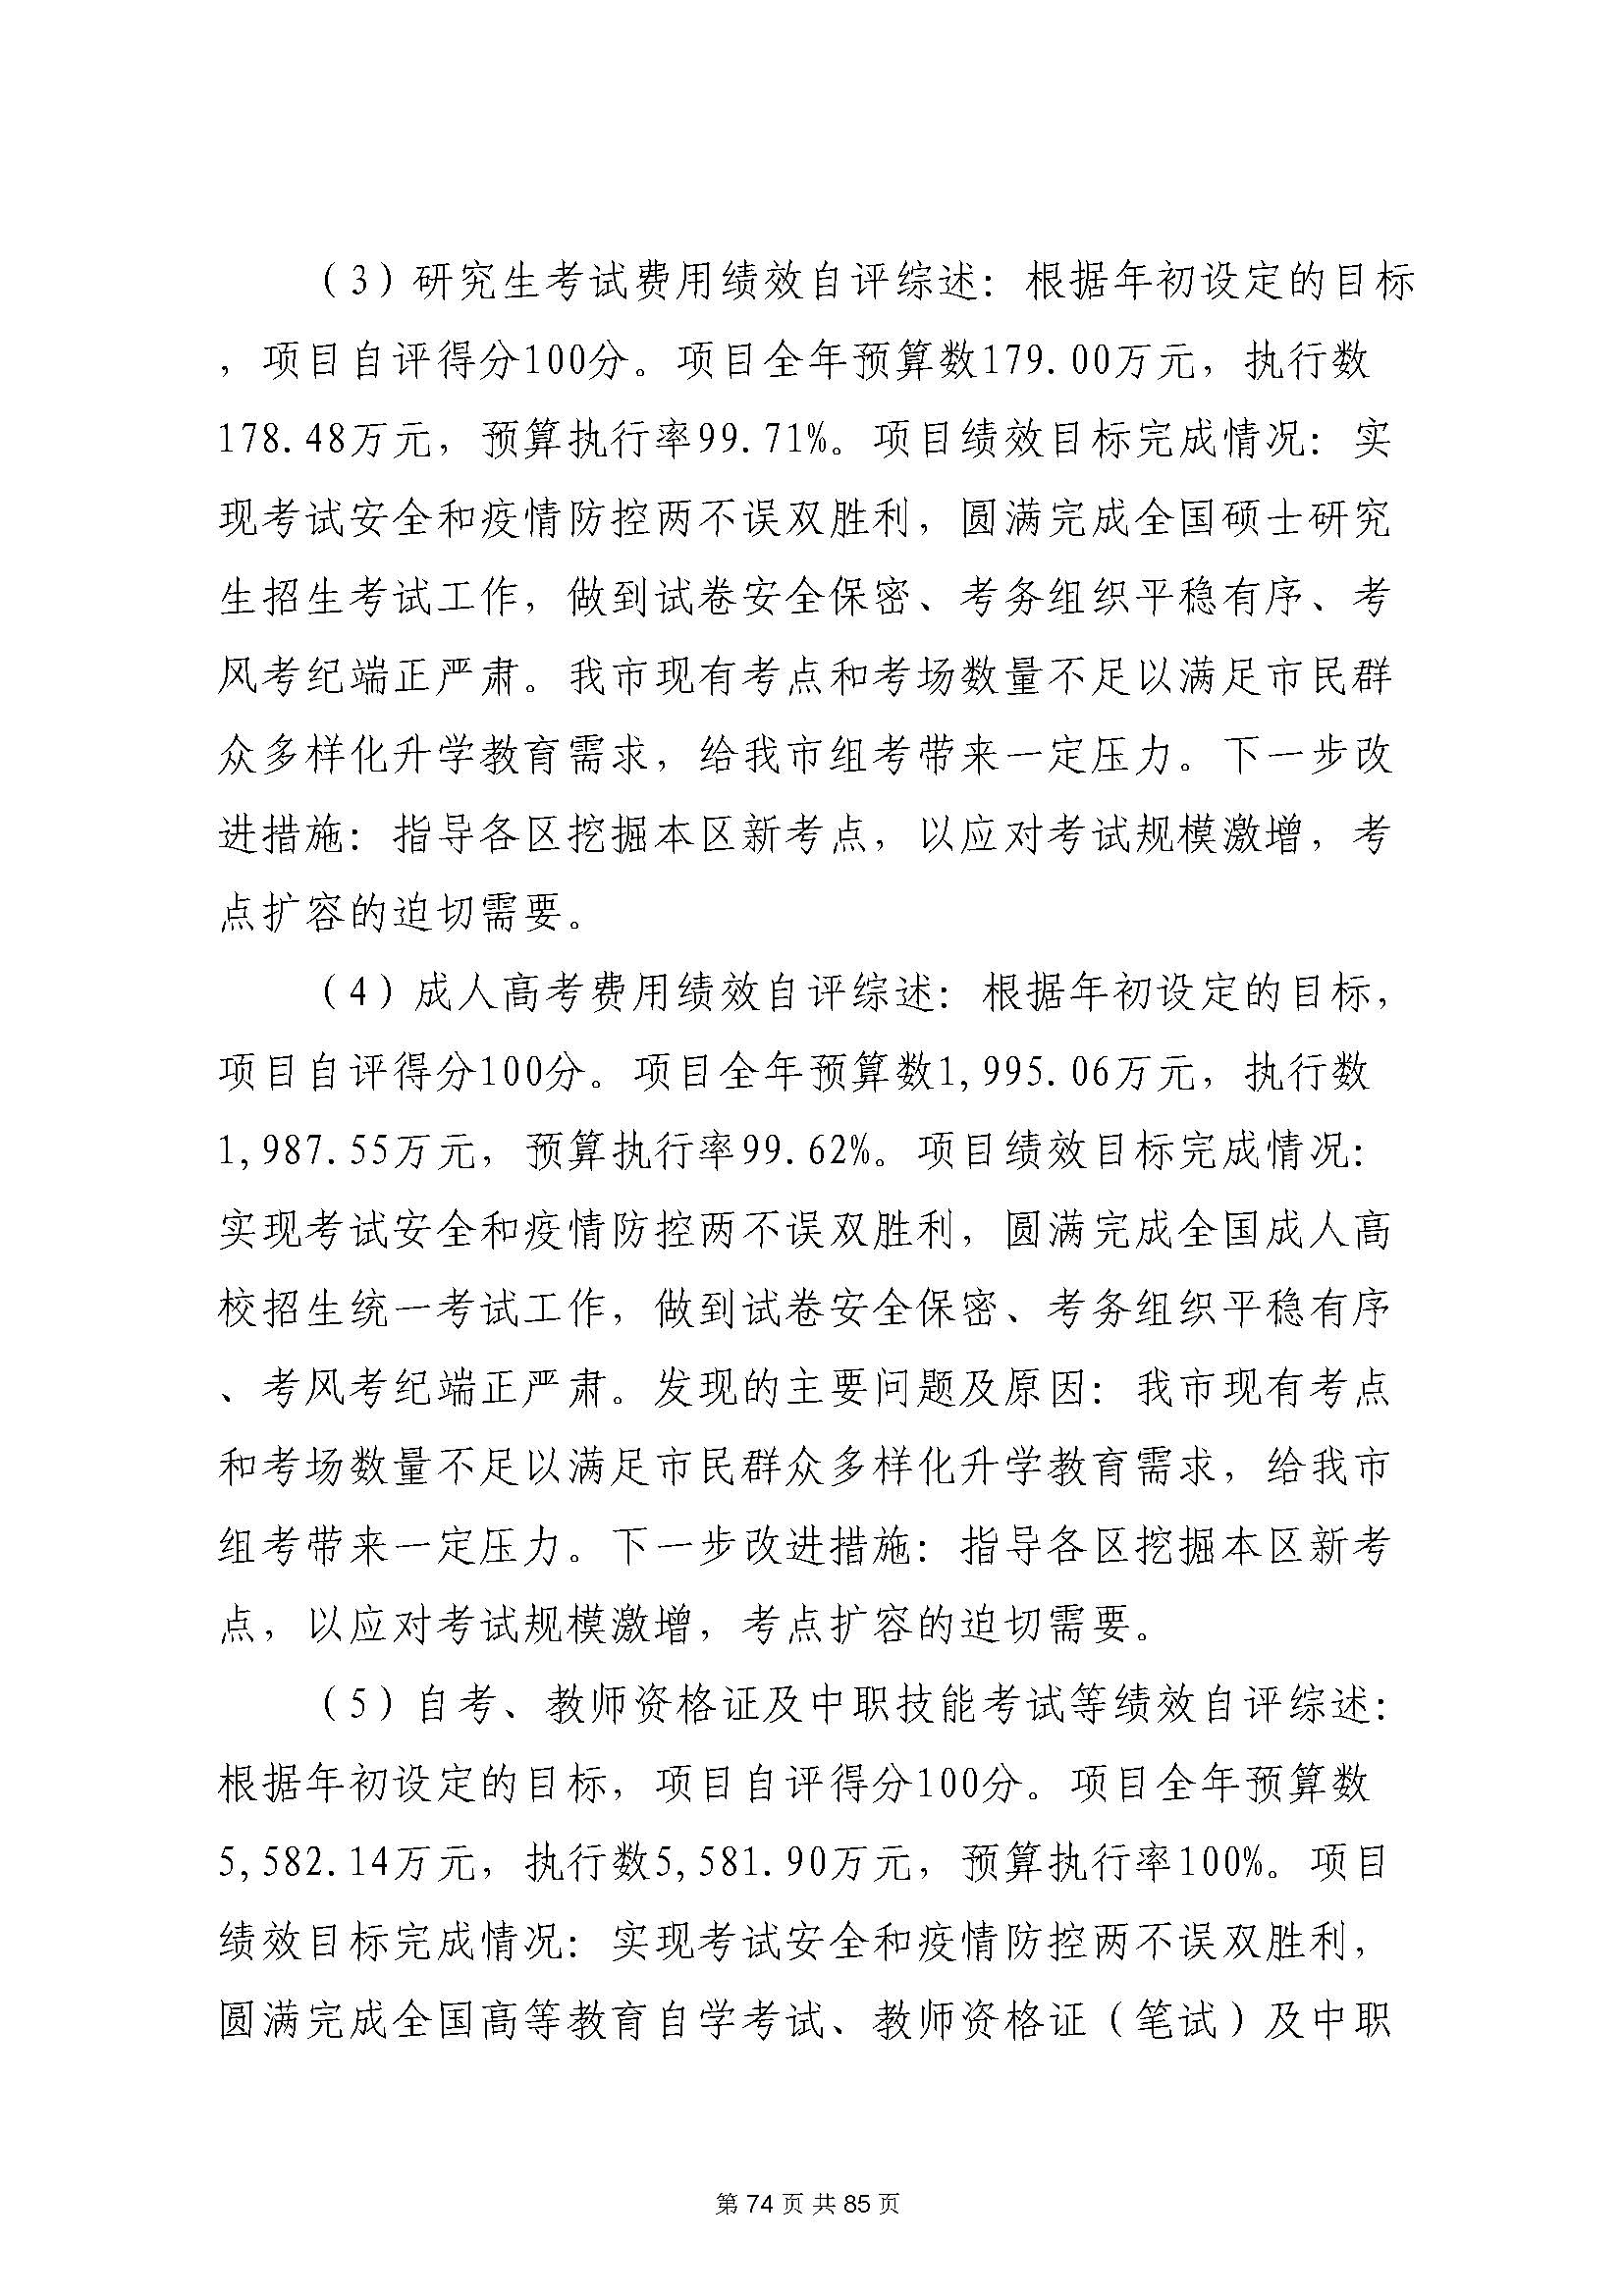 深圳市招生考试办公室2020年度部门决算_页面_75.jpg